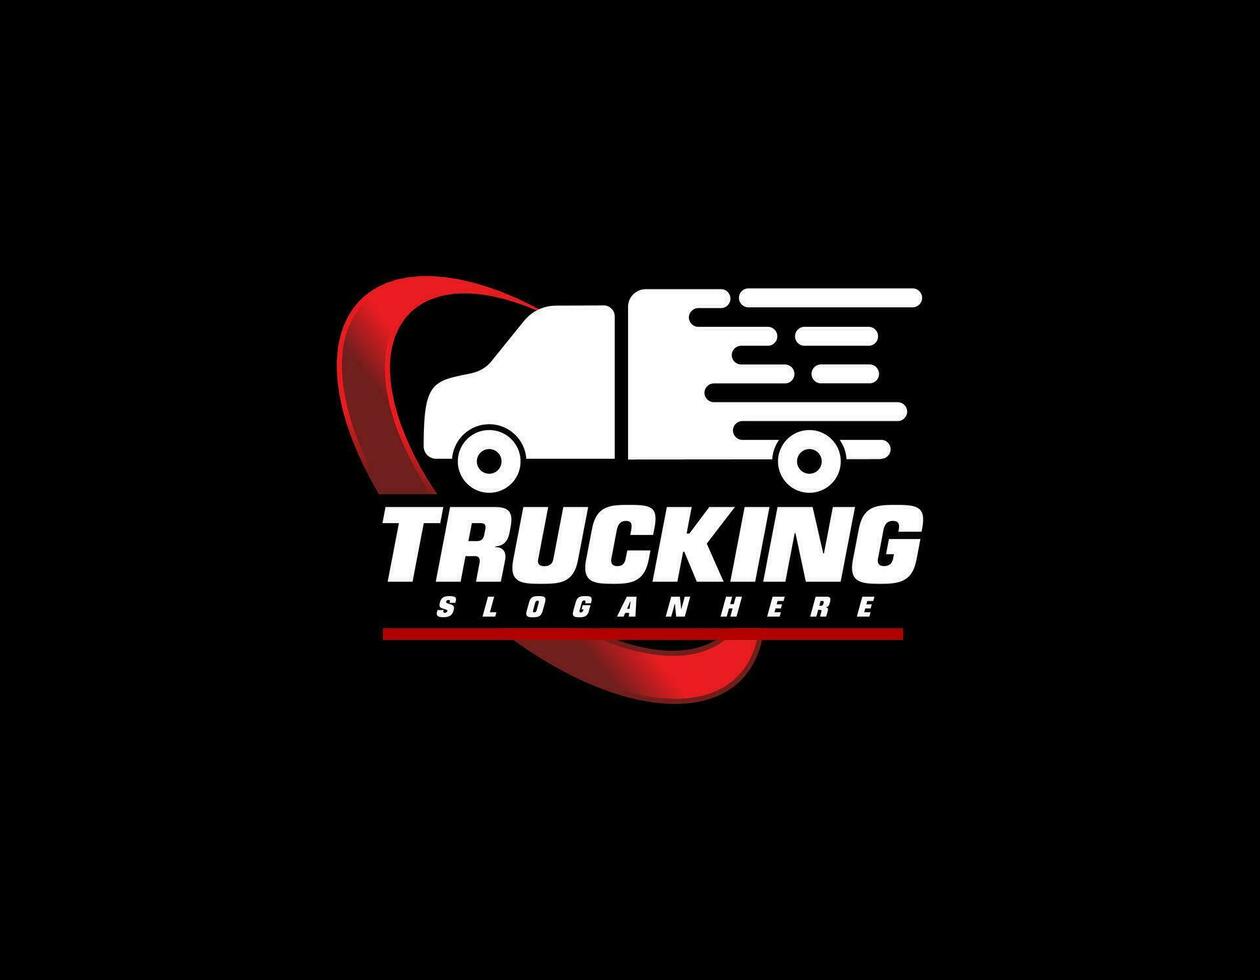 Truck illustration. Logo design vector